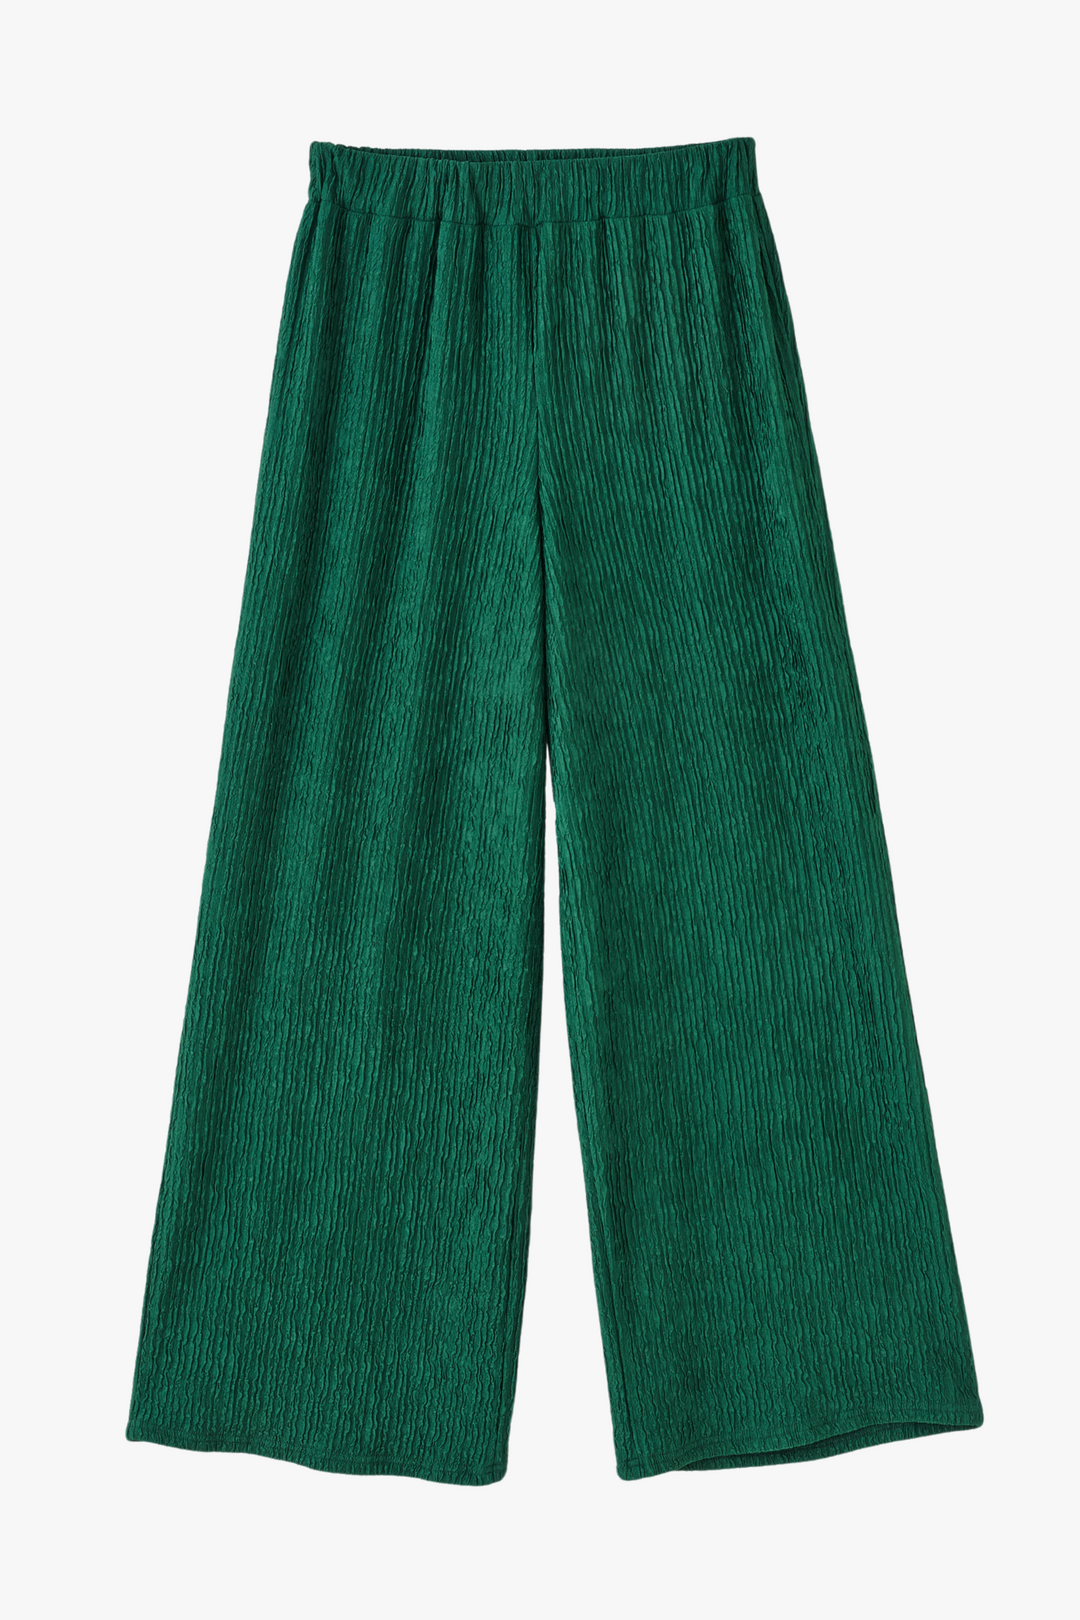 Groene getextureerde broek met wijde pijpen